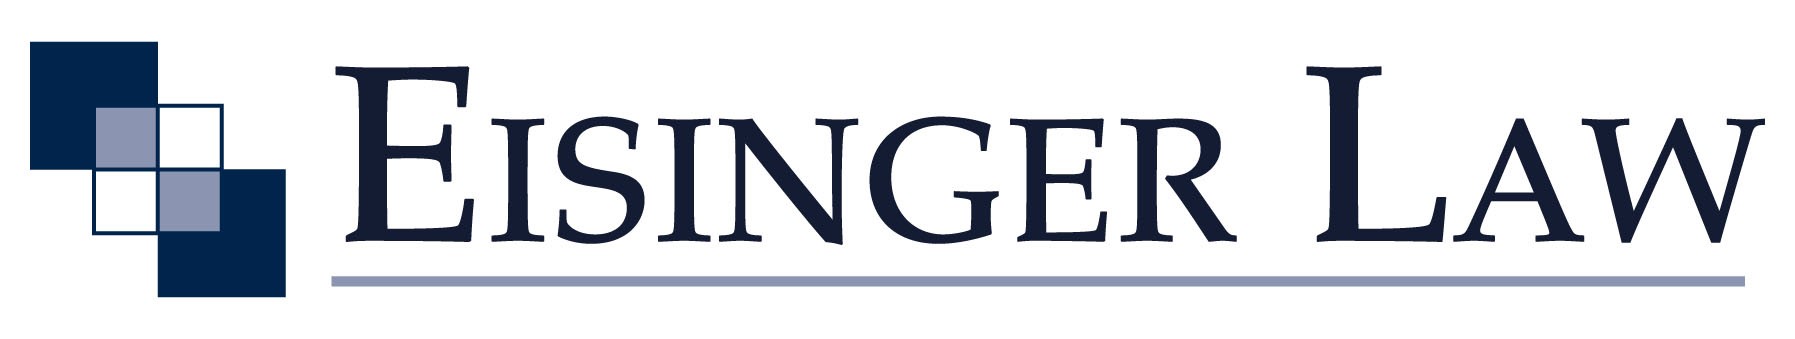 Eisinger Law logo